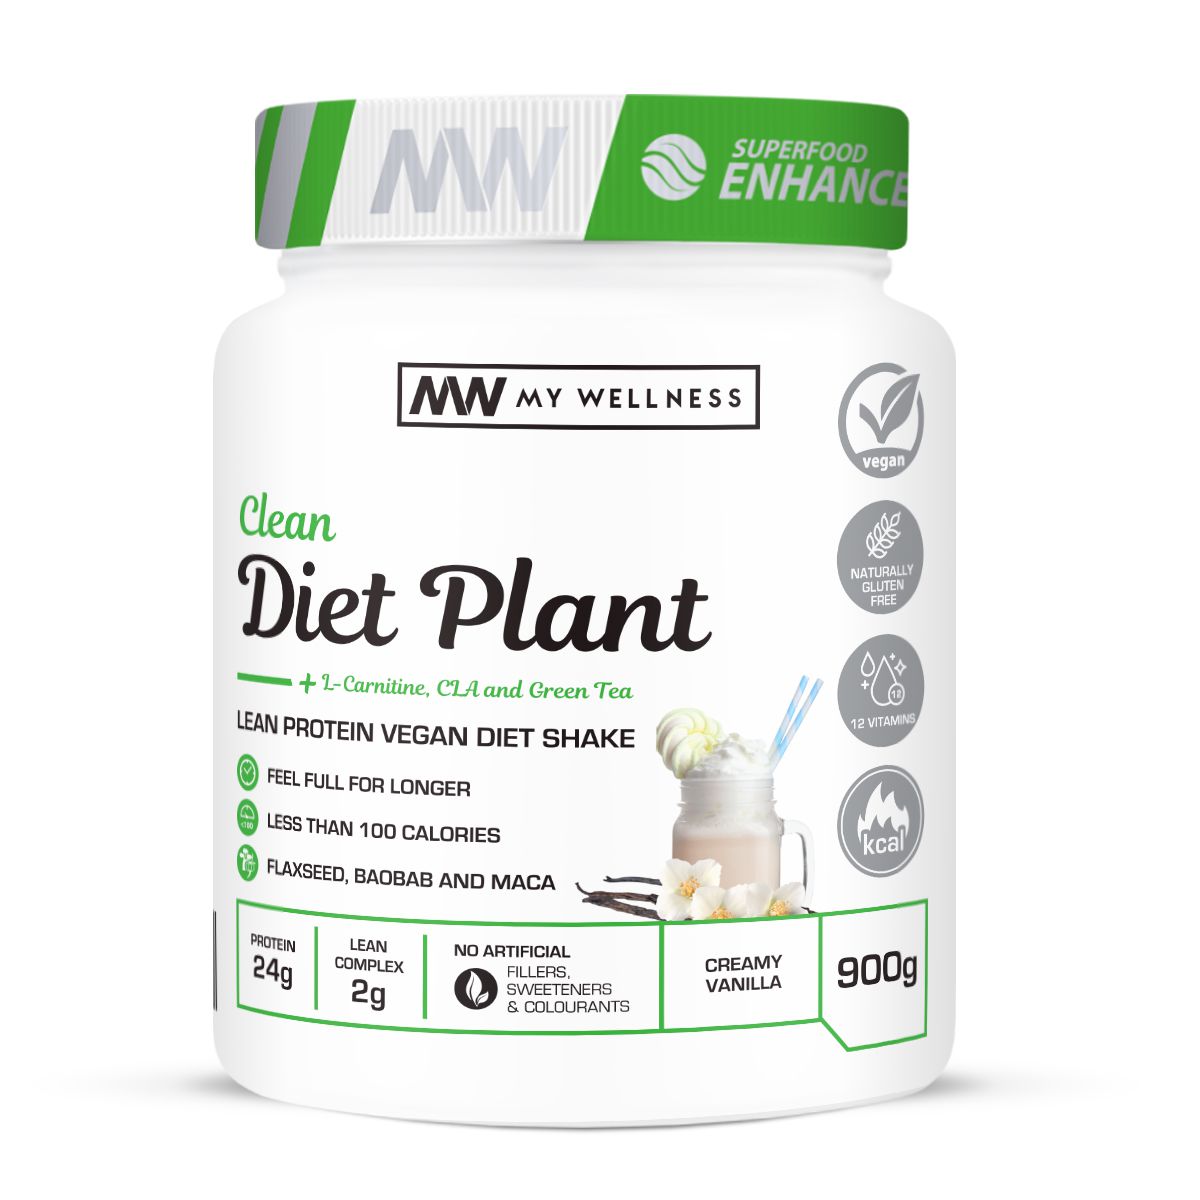 My Wellness - Clean Diet Plant 900g -Vanilla Bean